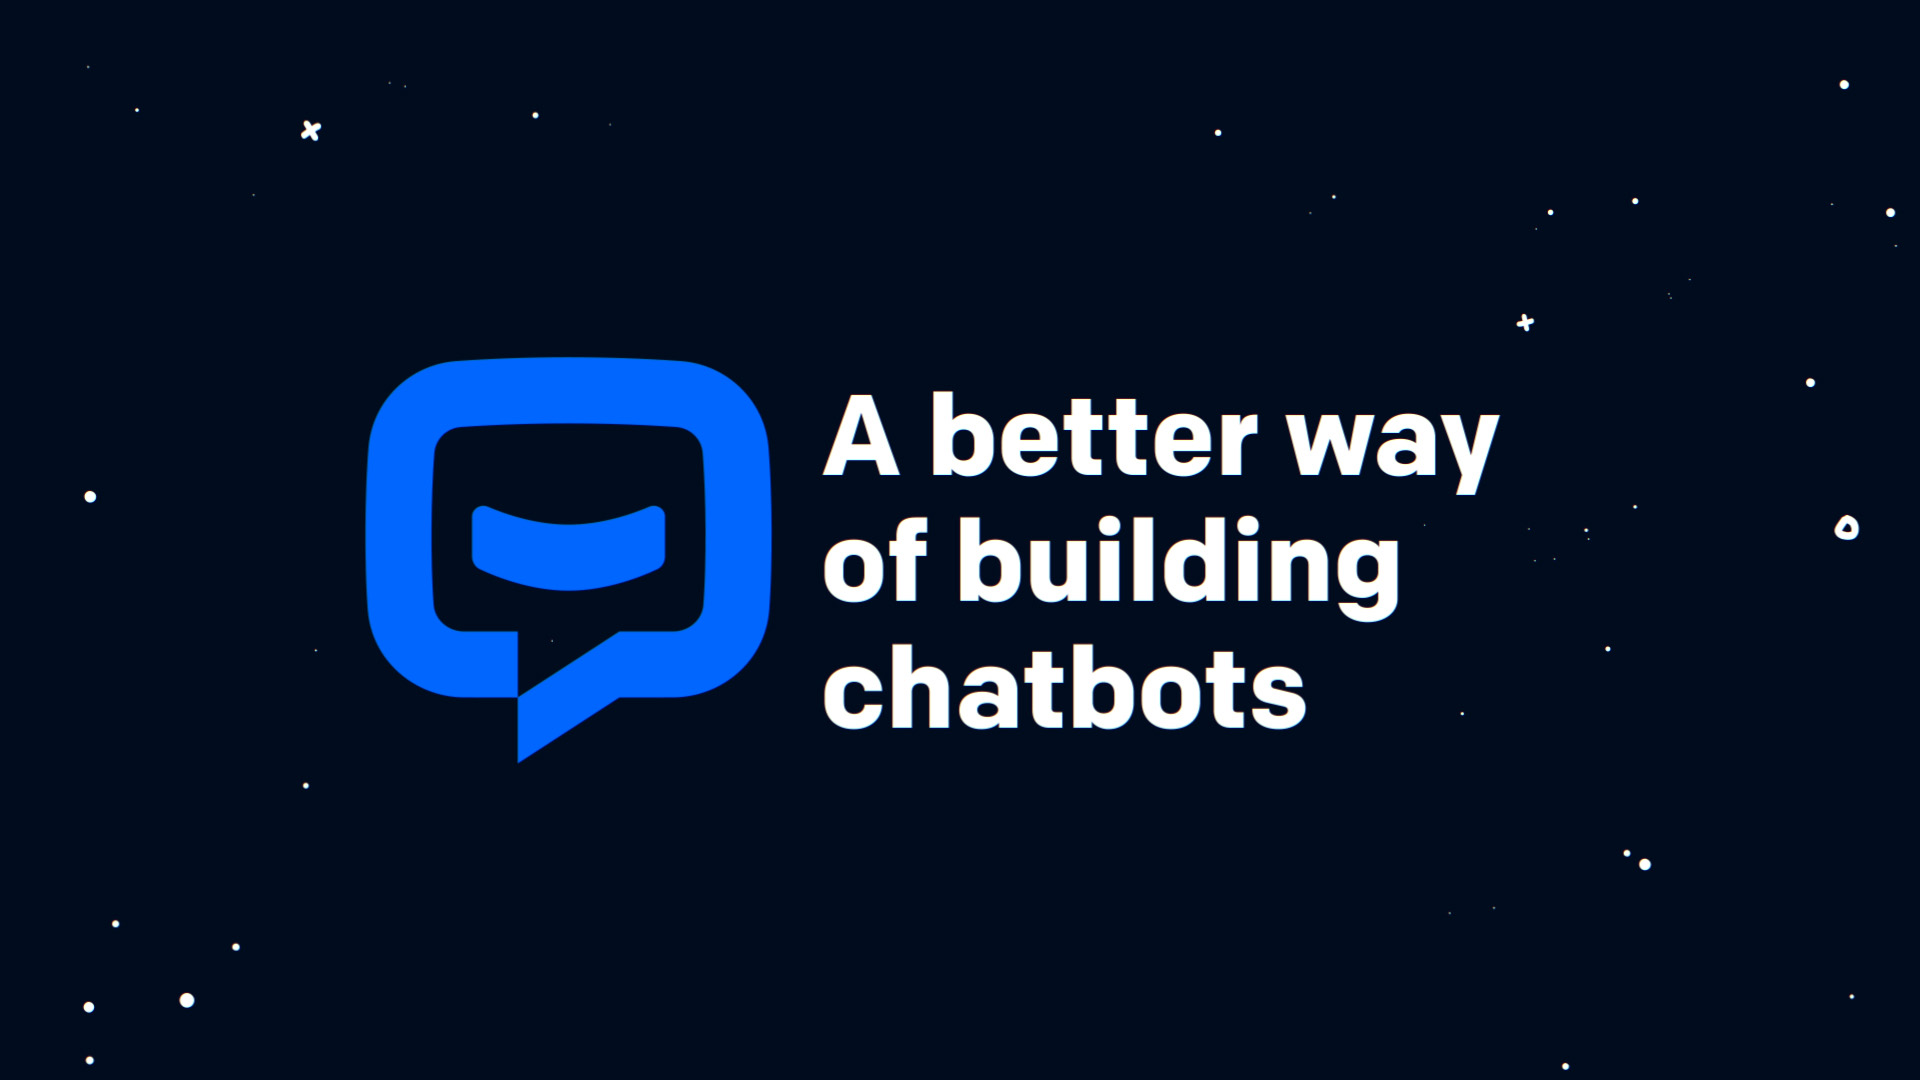 ChatBot a better way